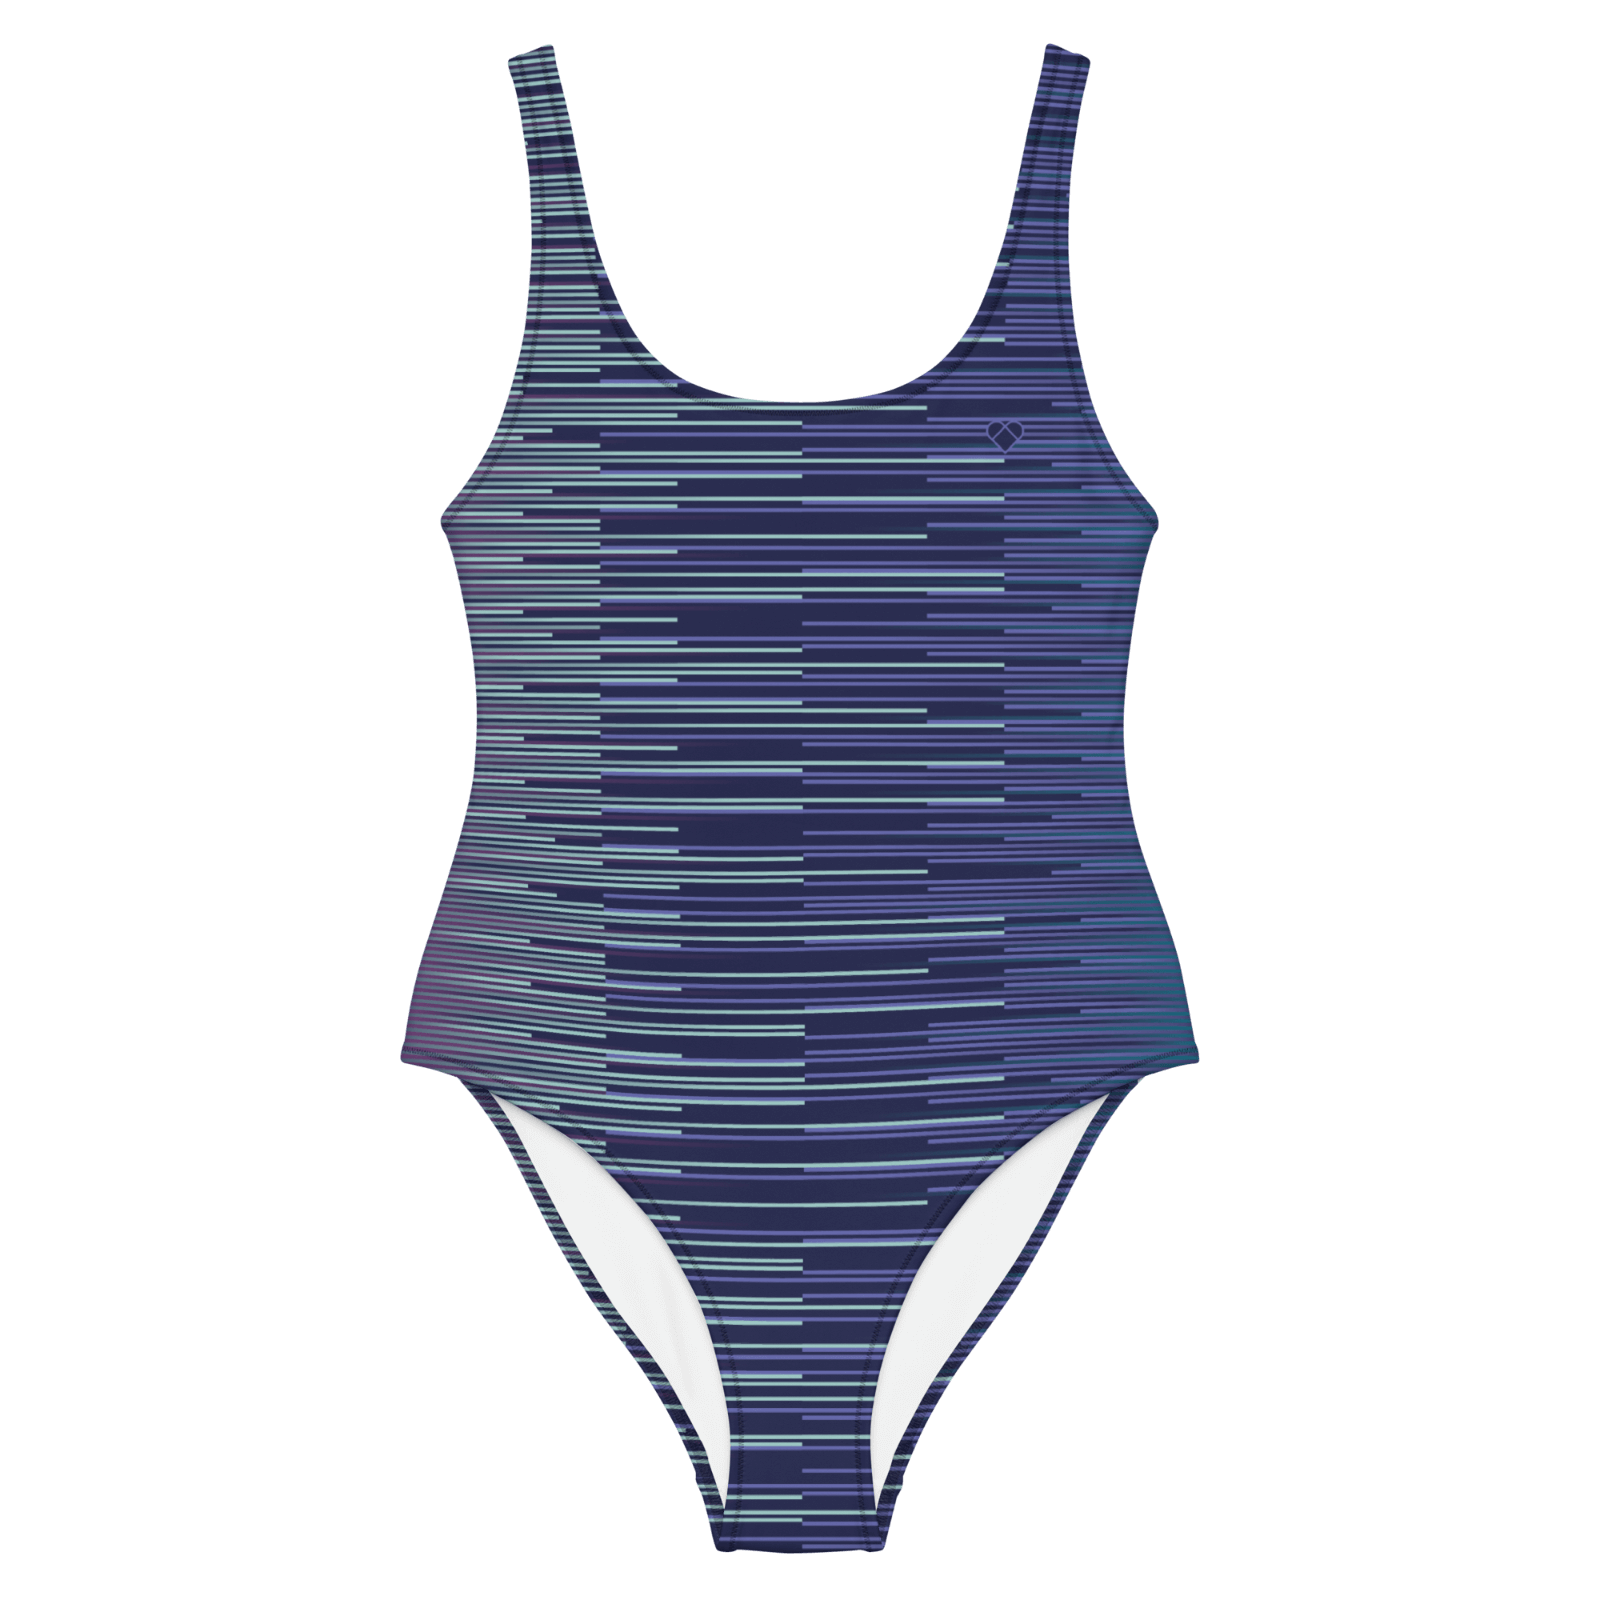 Periwinkle Mint Fusion Stripes Dual Swimsuit - Women's Beachwear